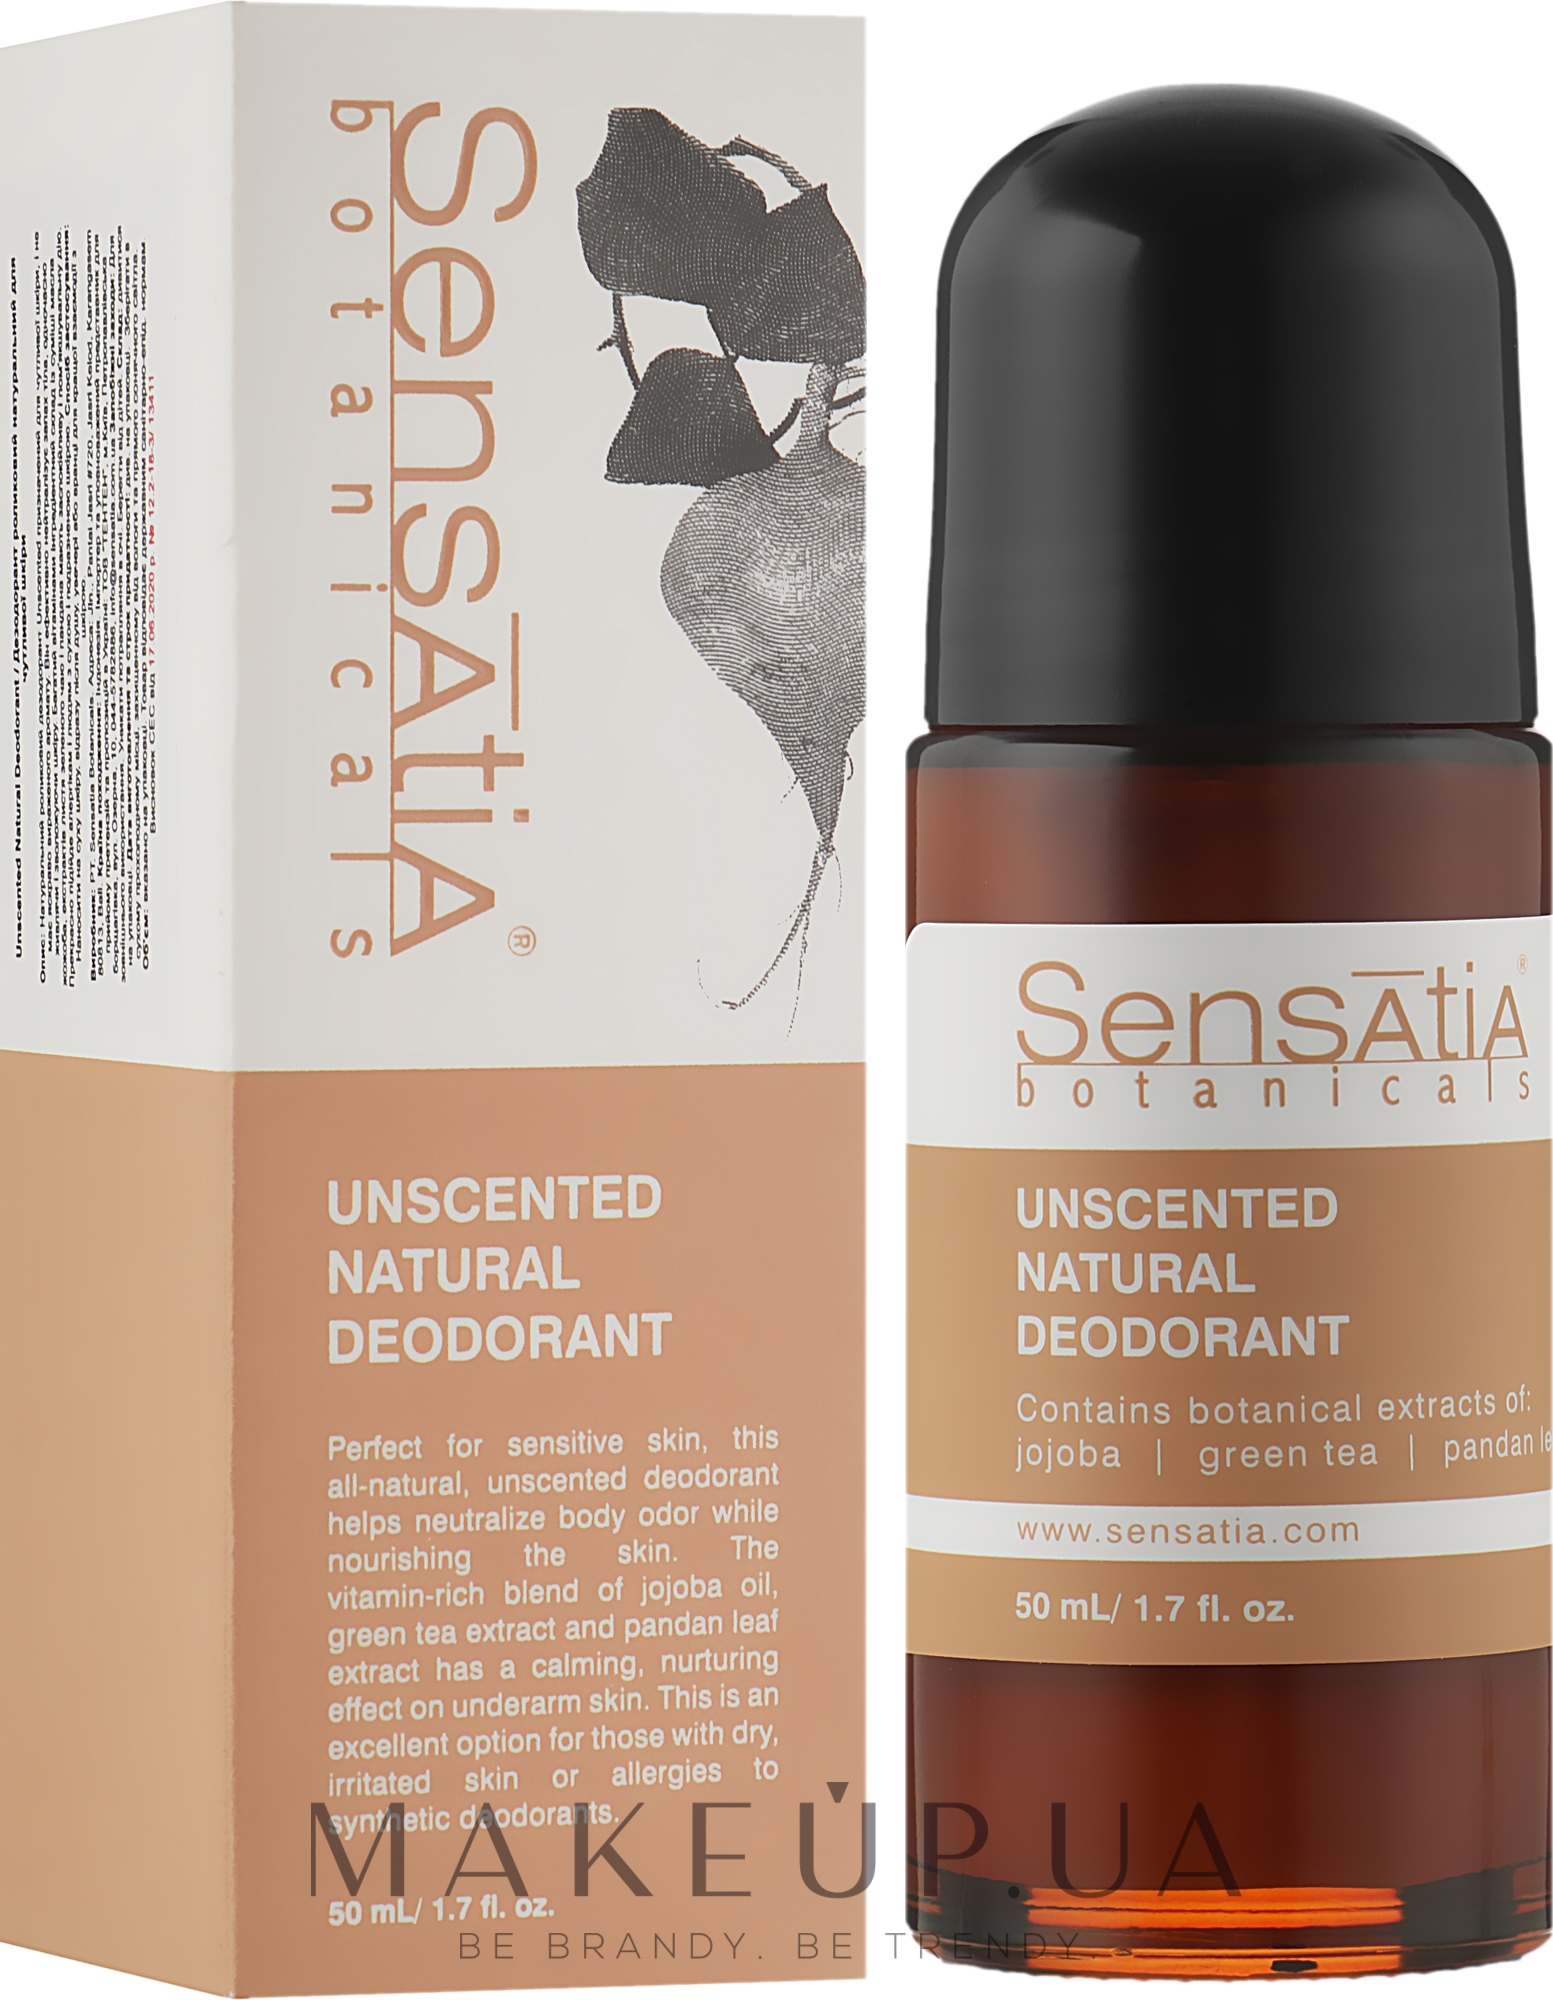 Дезодорант роликовий для чувствительной кожи - Sensatia Botanicals Unscented Natural Deodorant — фото 50ml